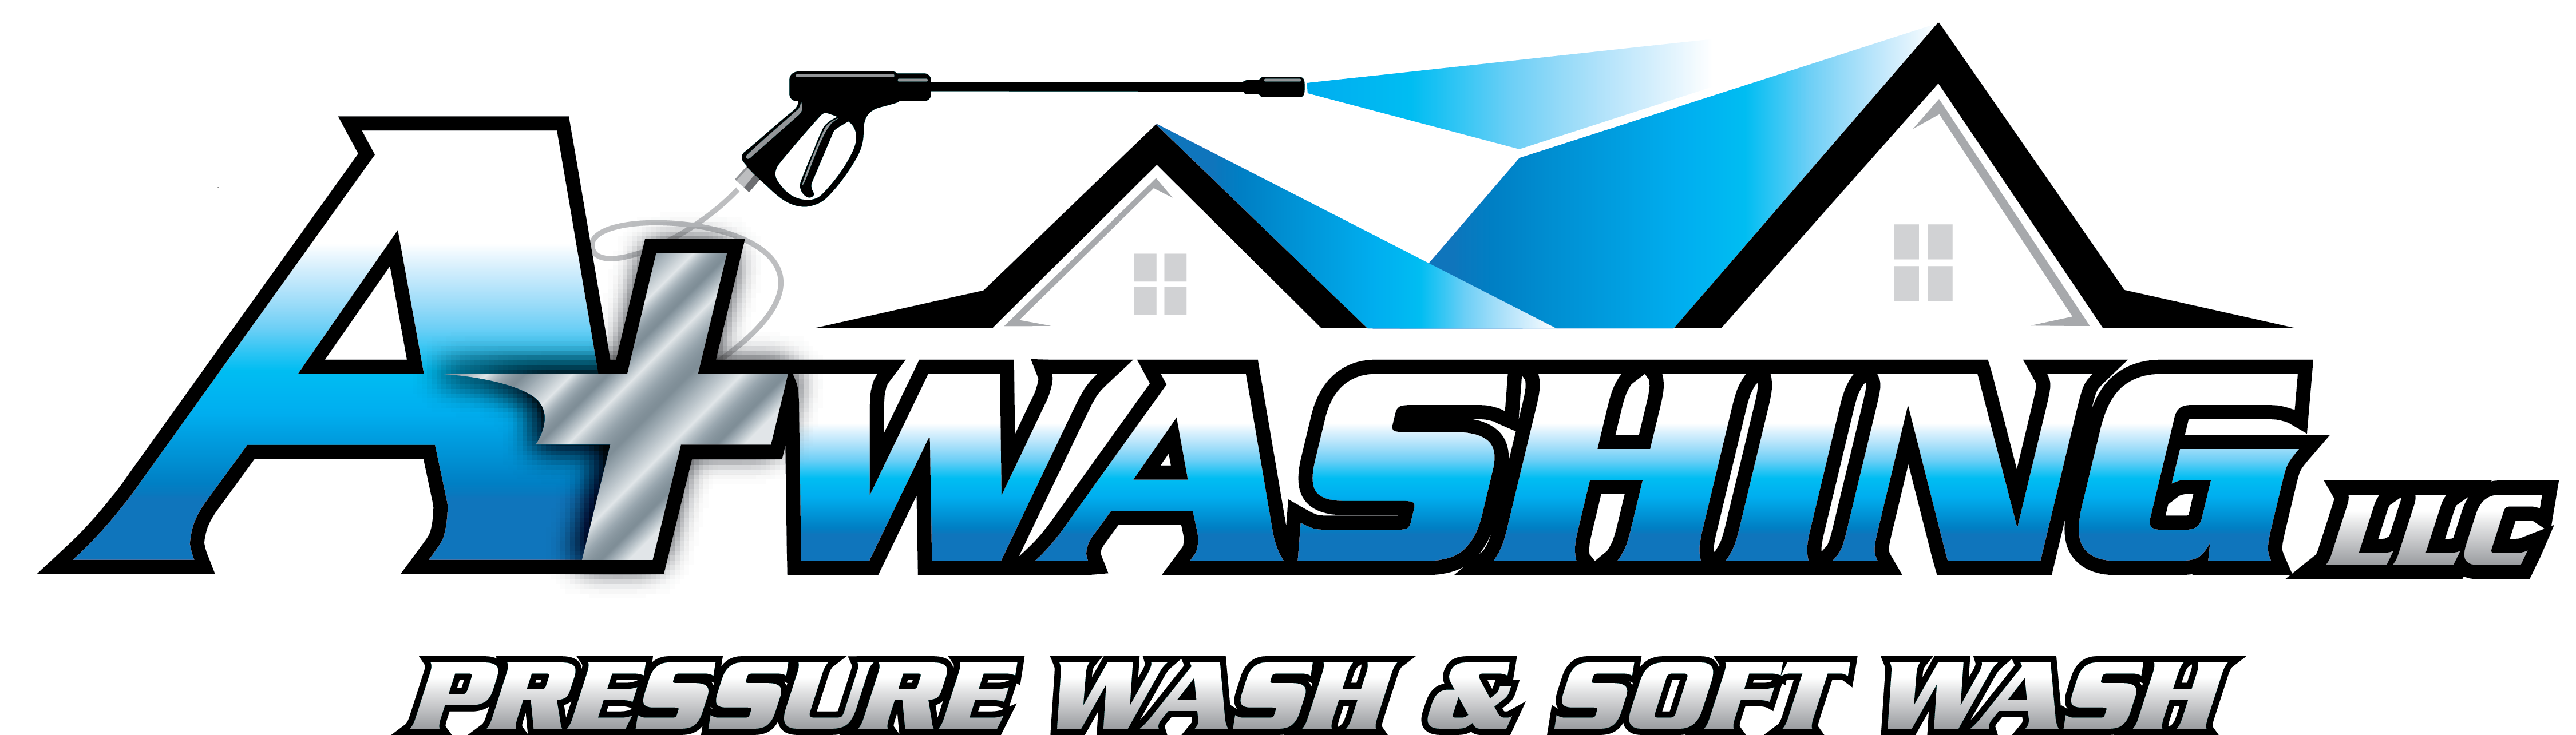 A+ Washing, LLC Logo